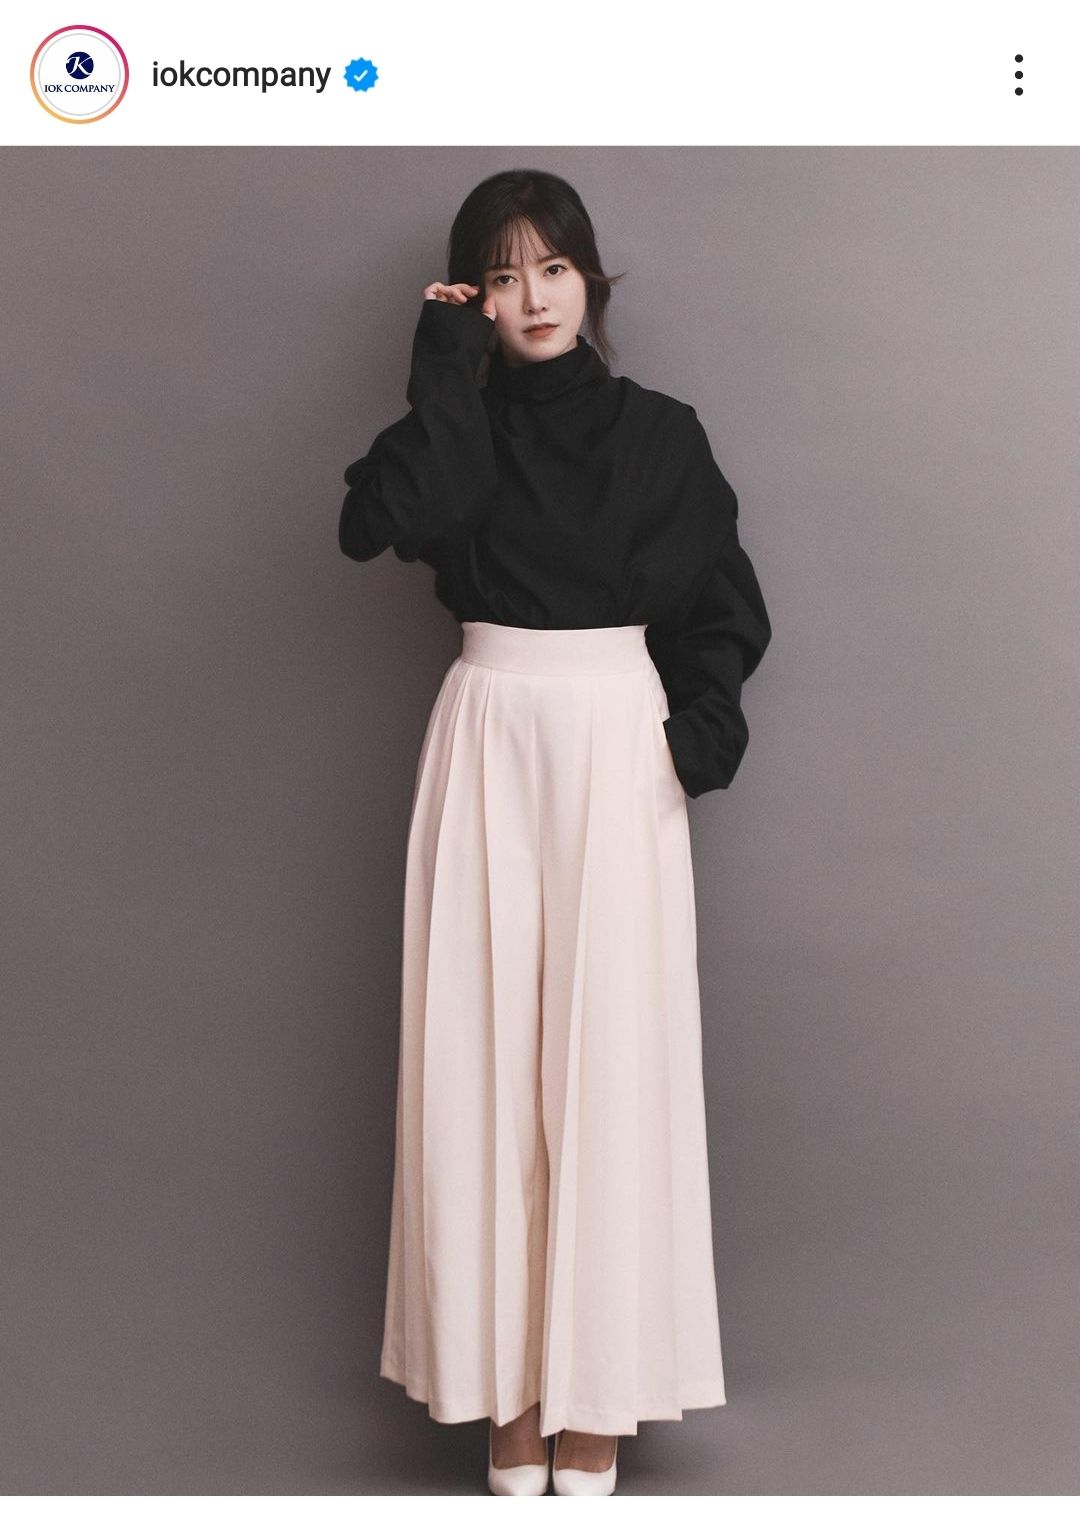 Foto profil terbaru Koo Hye Sun di Instagram agensinya IOK Company